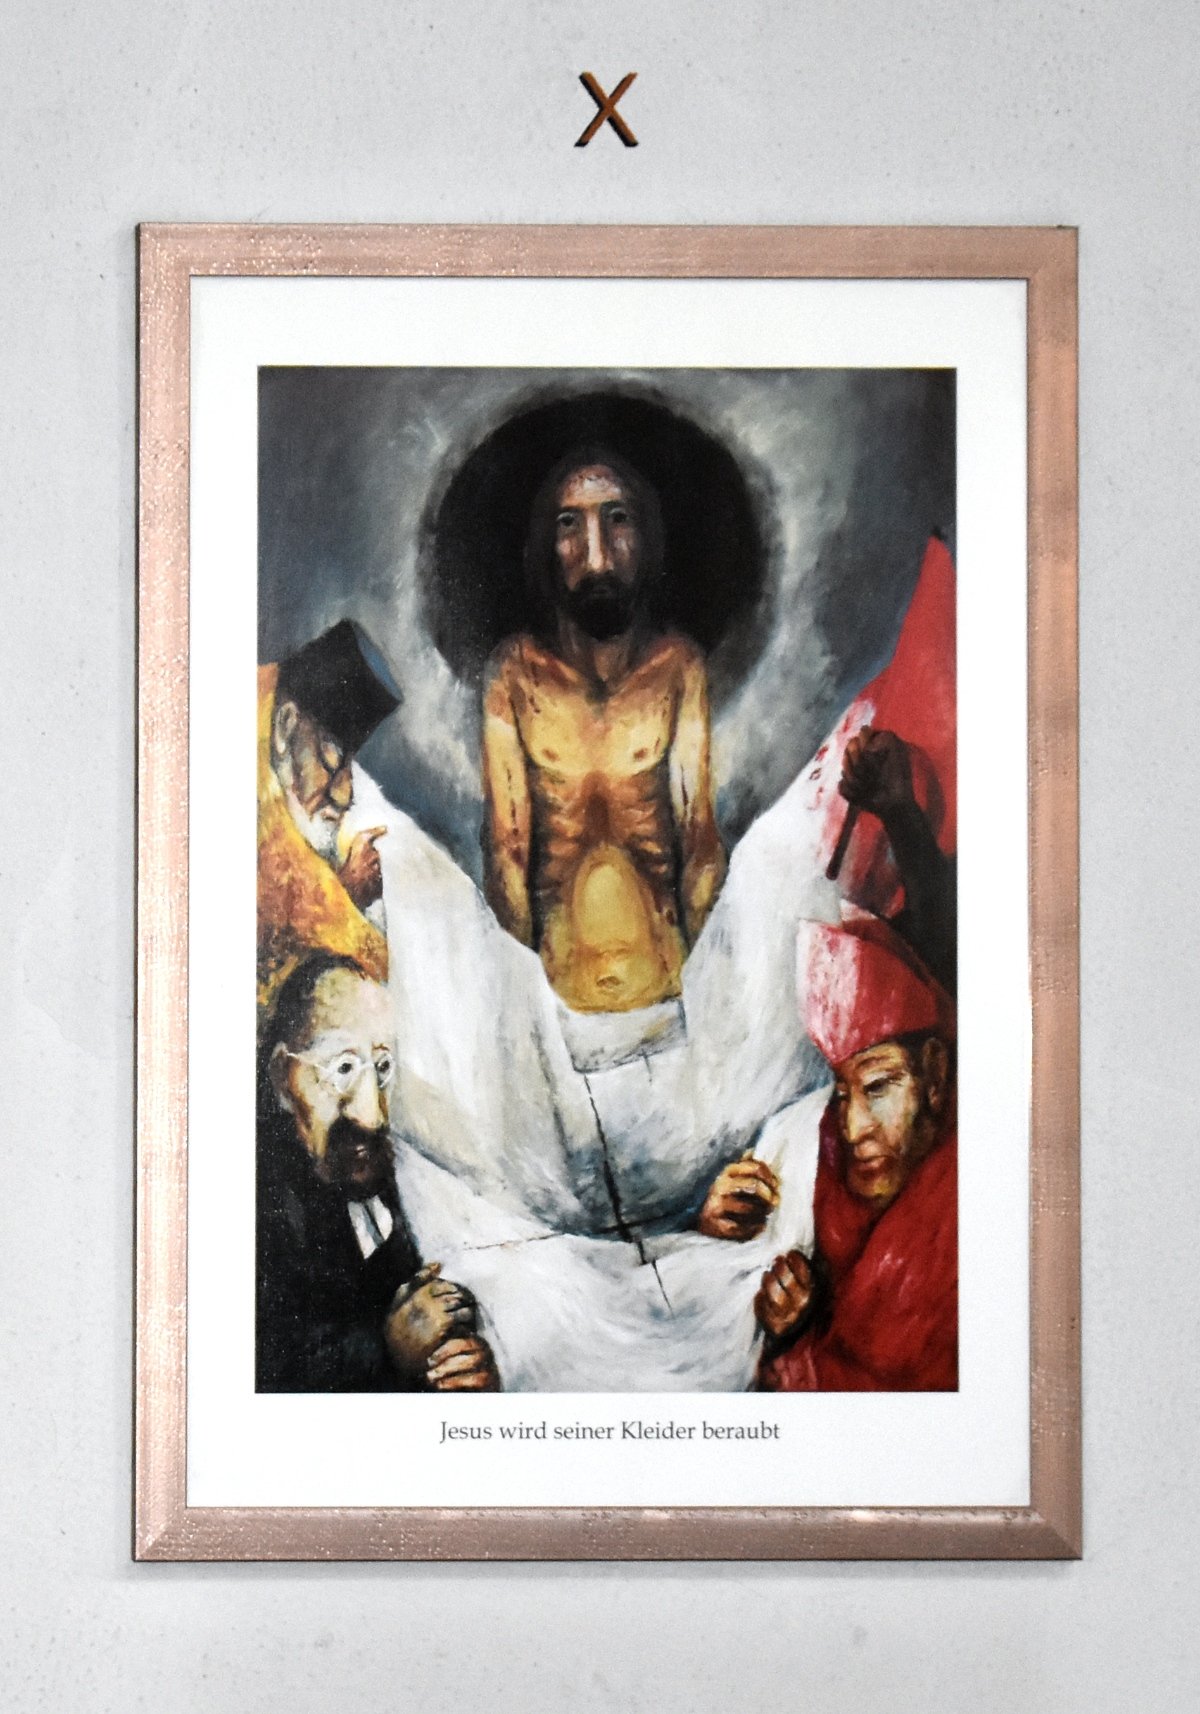 10. Station: Jesus wird seiner Kleider beraubt (c) M. Haschke